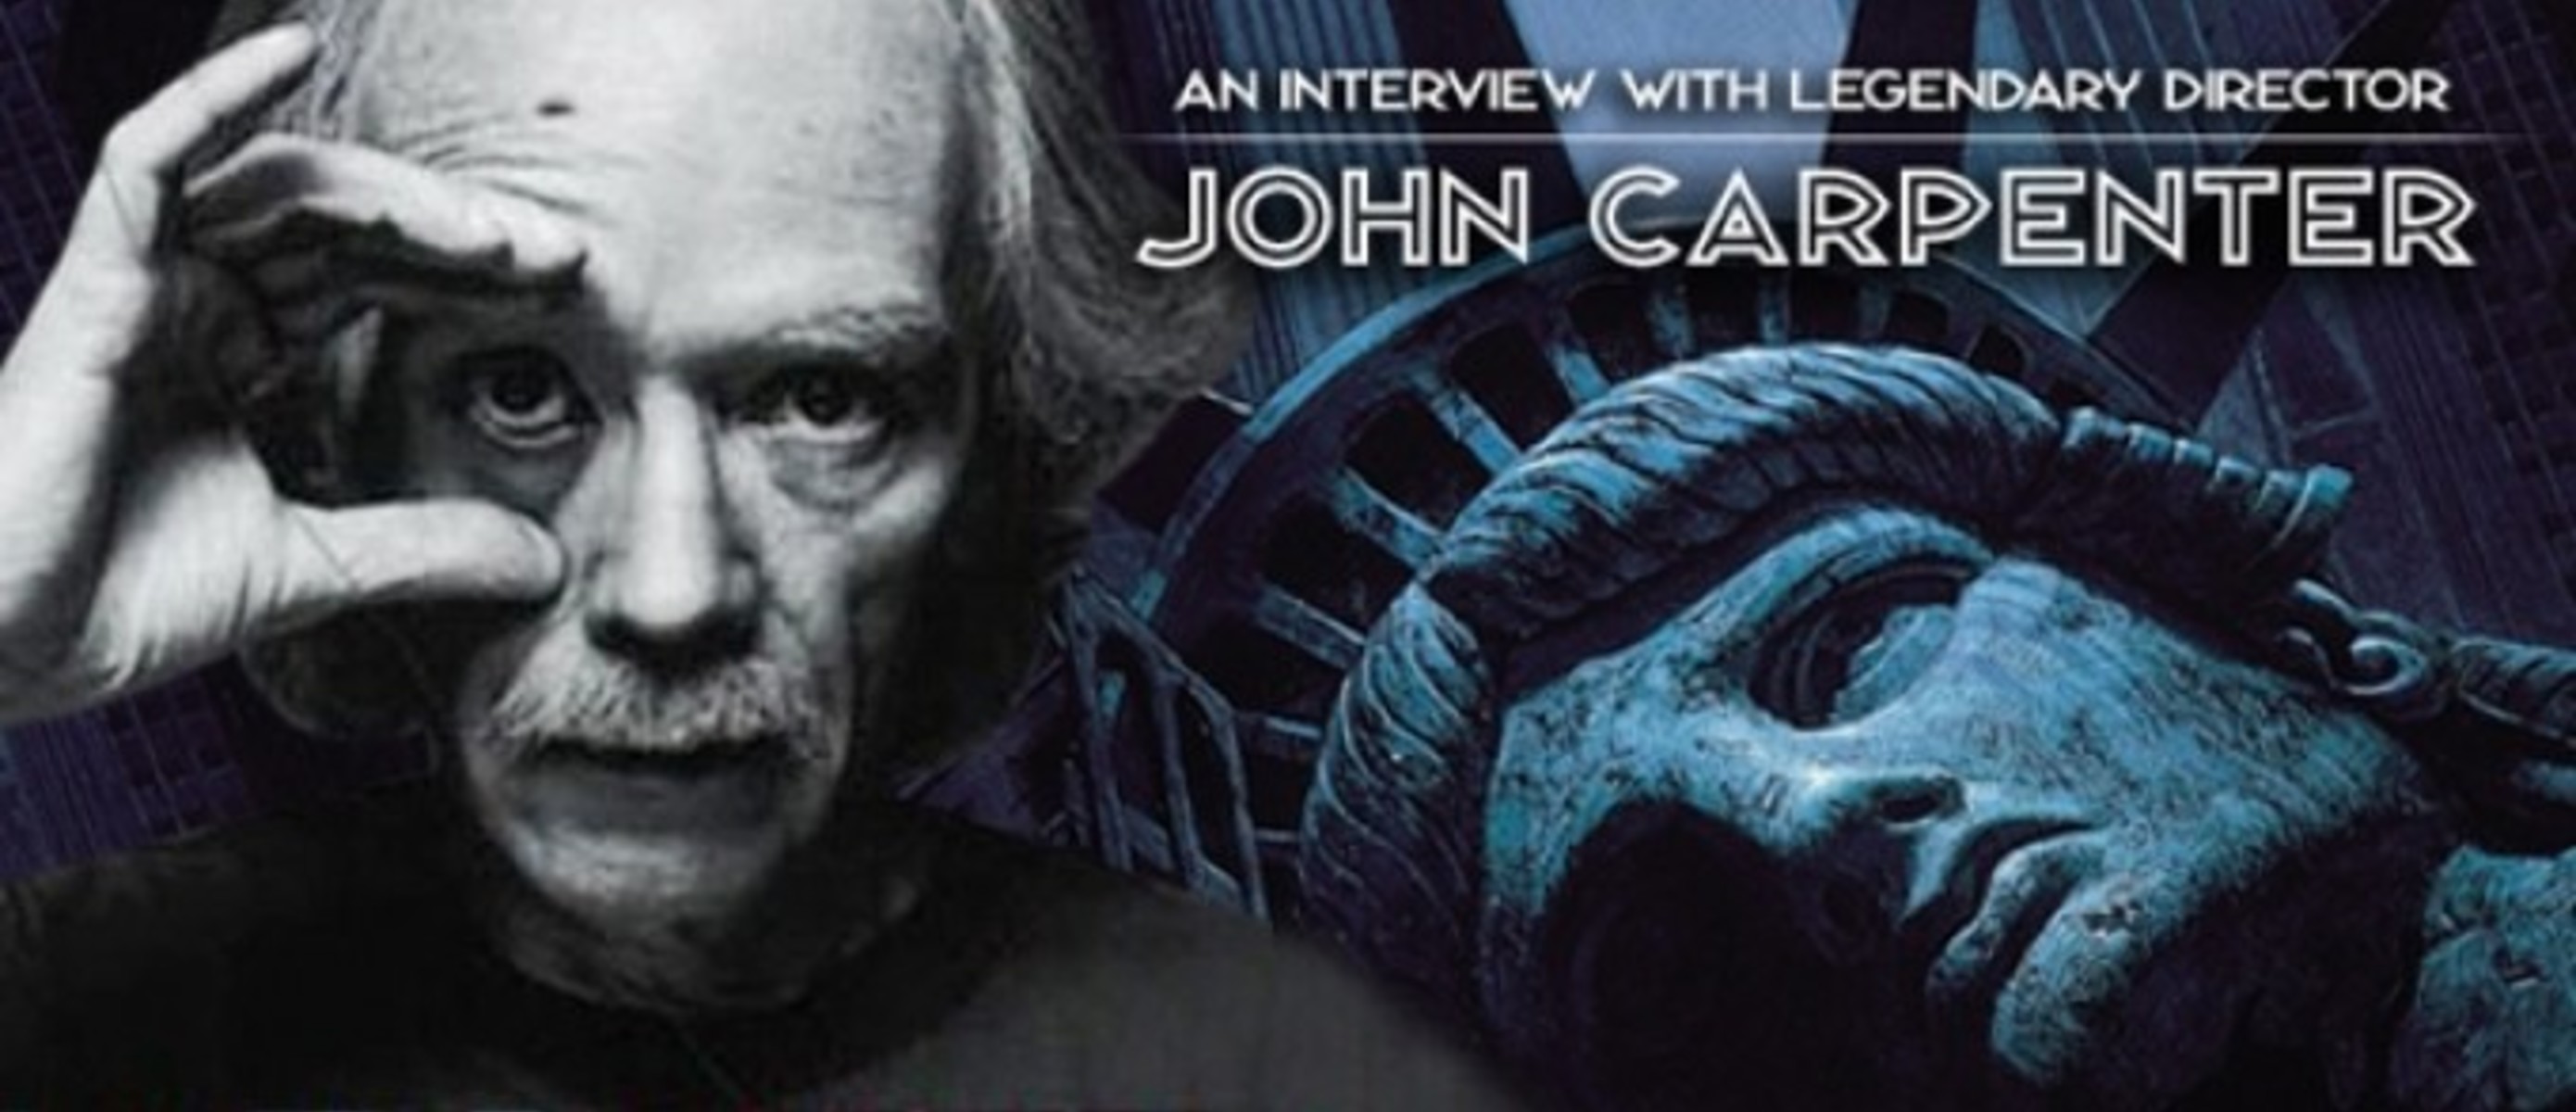 Джон карпентер кто хочет стать. Трилогия апокалипсиса Джона Карпентера. Легендарный Режиссер ужасов. Режиссеры известные в жанре ужасов.